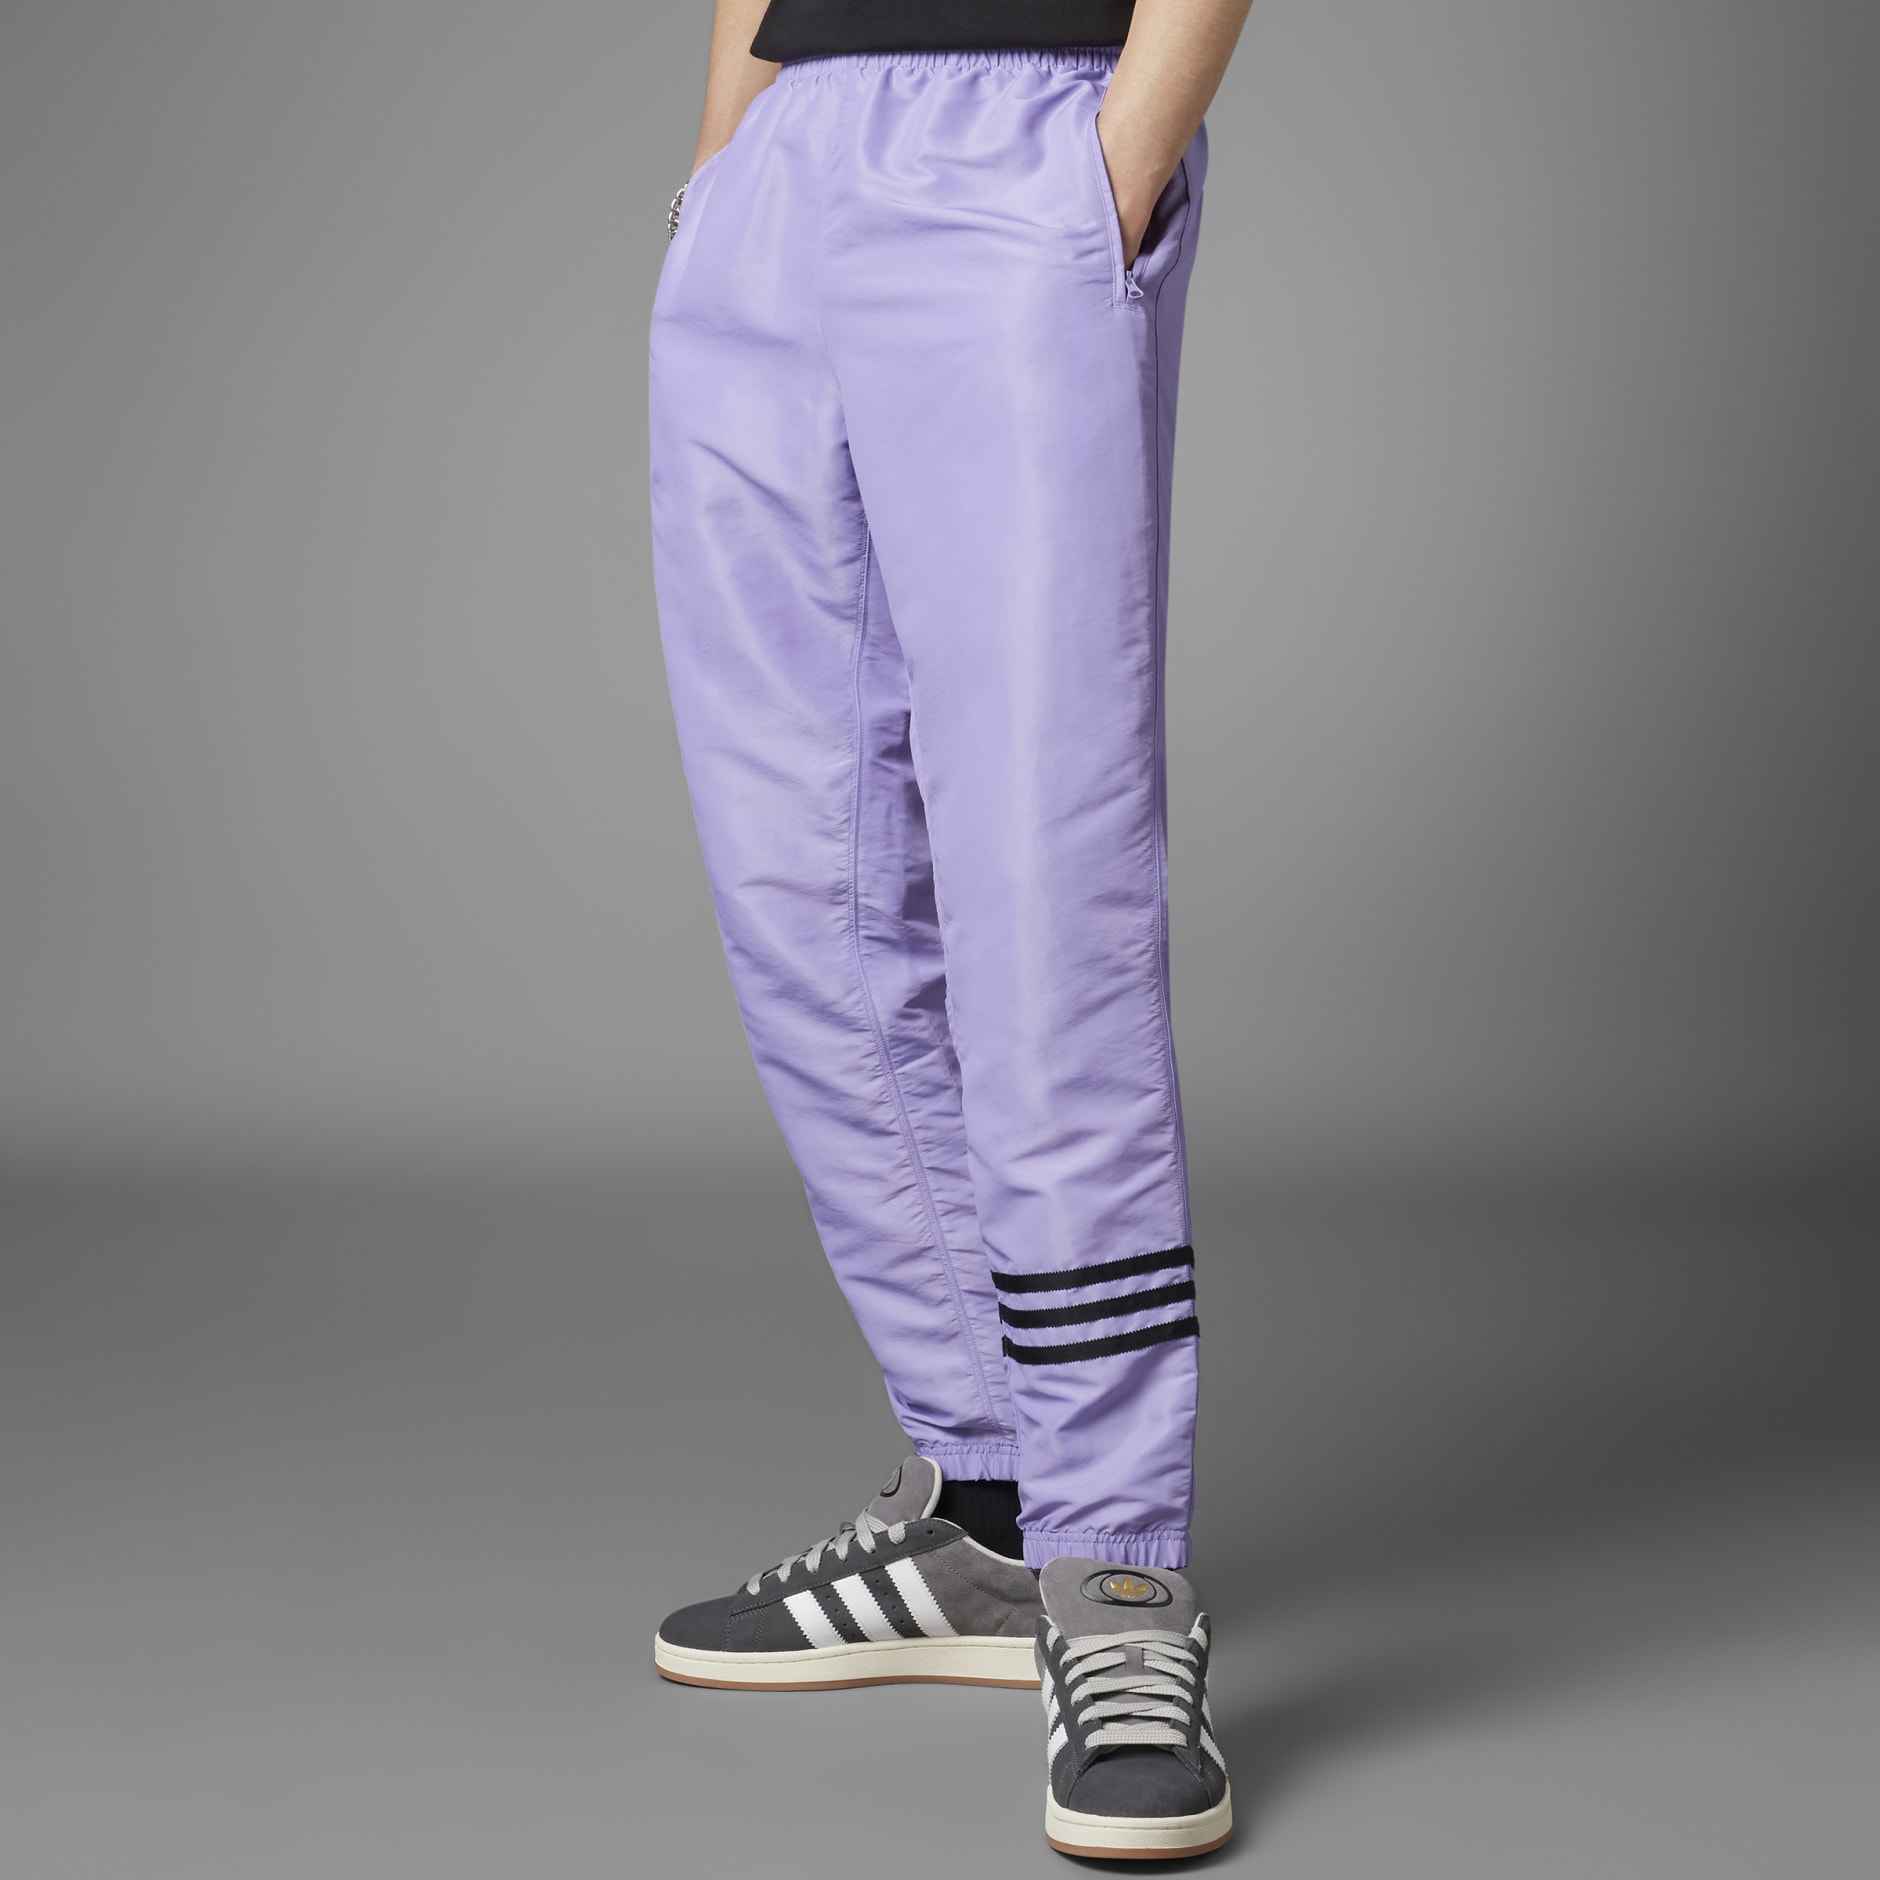 Bruno Purple Shiny Nylon 3-Stripe Wind Pants | The Parachute Pants Store